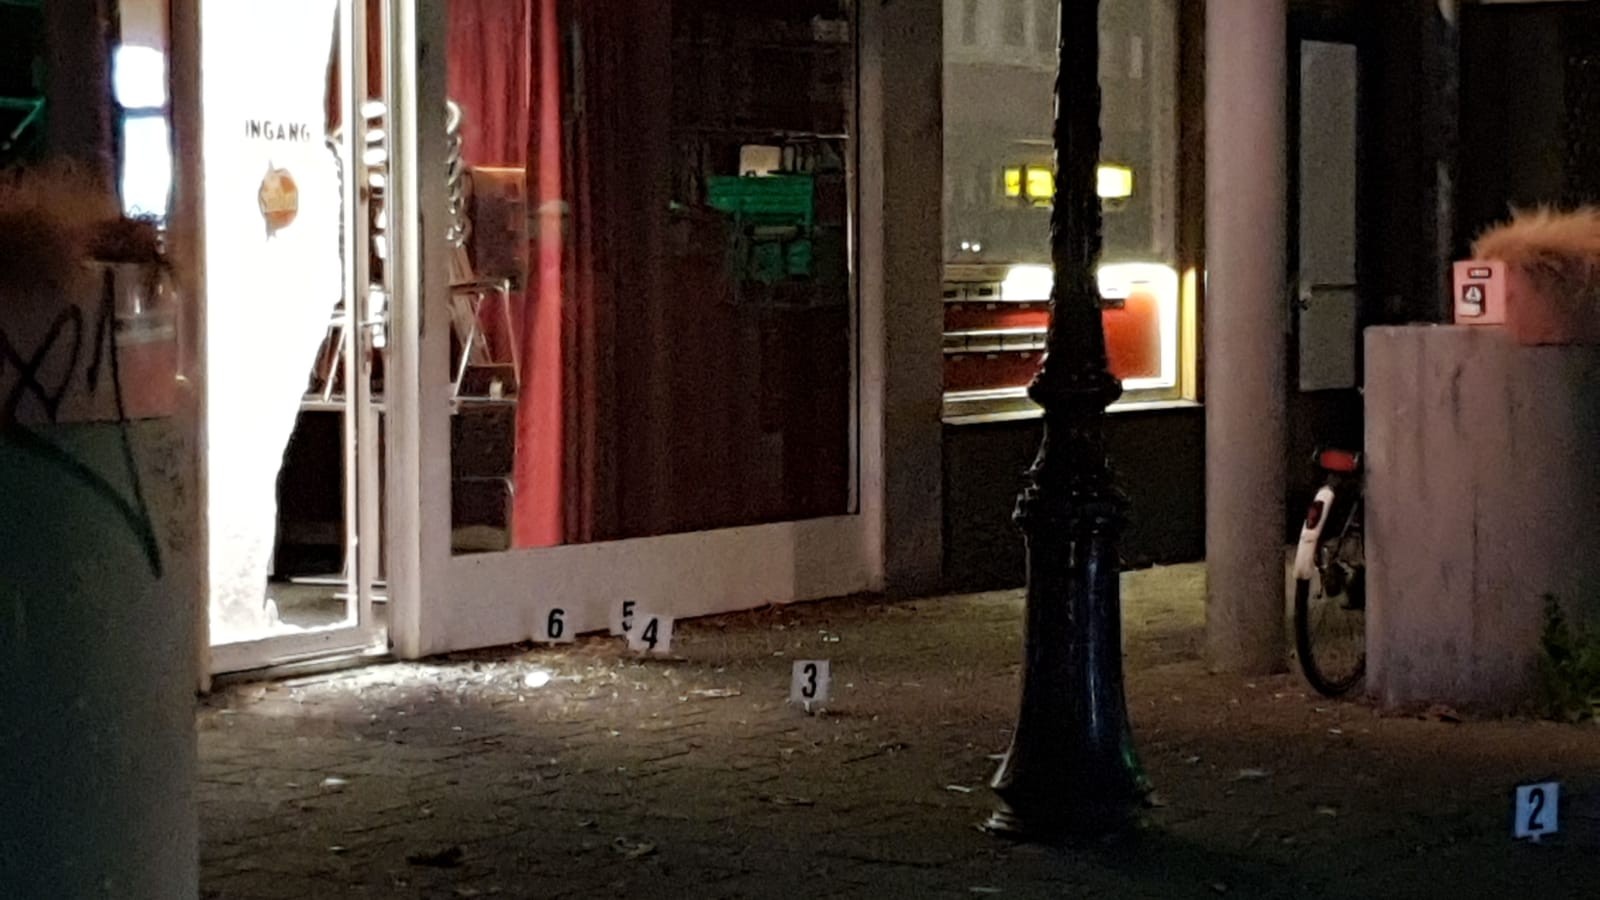 Snackbar onder vuur genomen in Eerste Oosterparkstraat